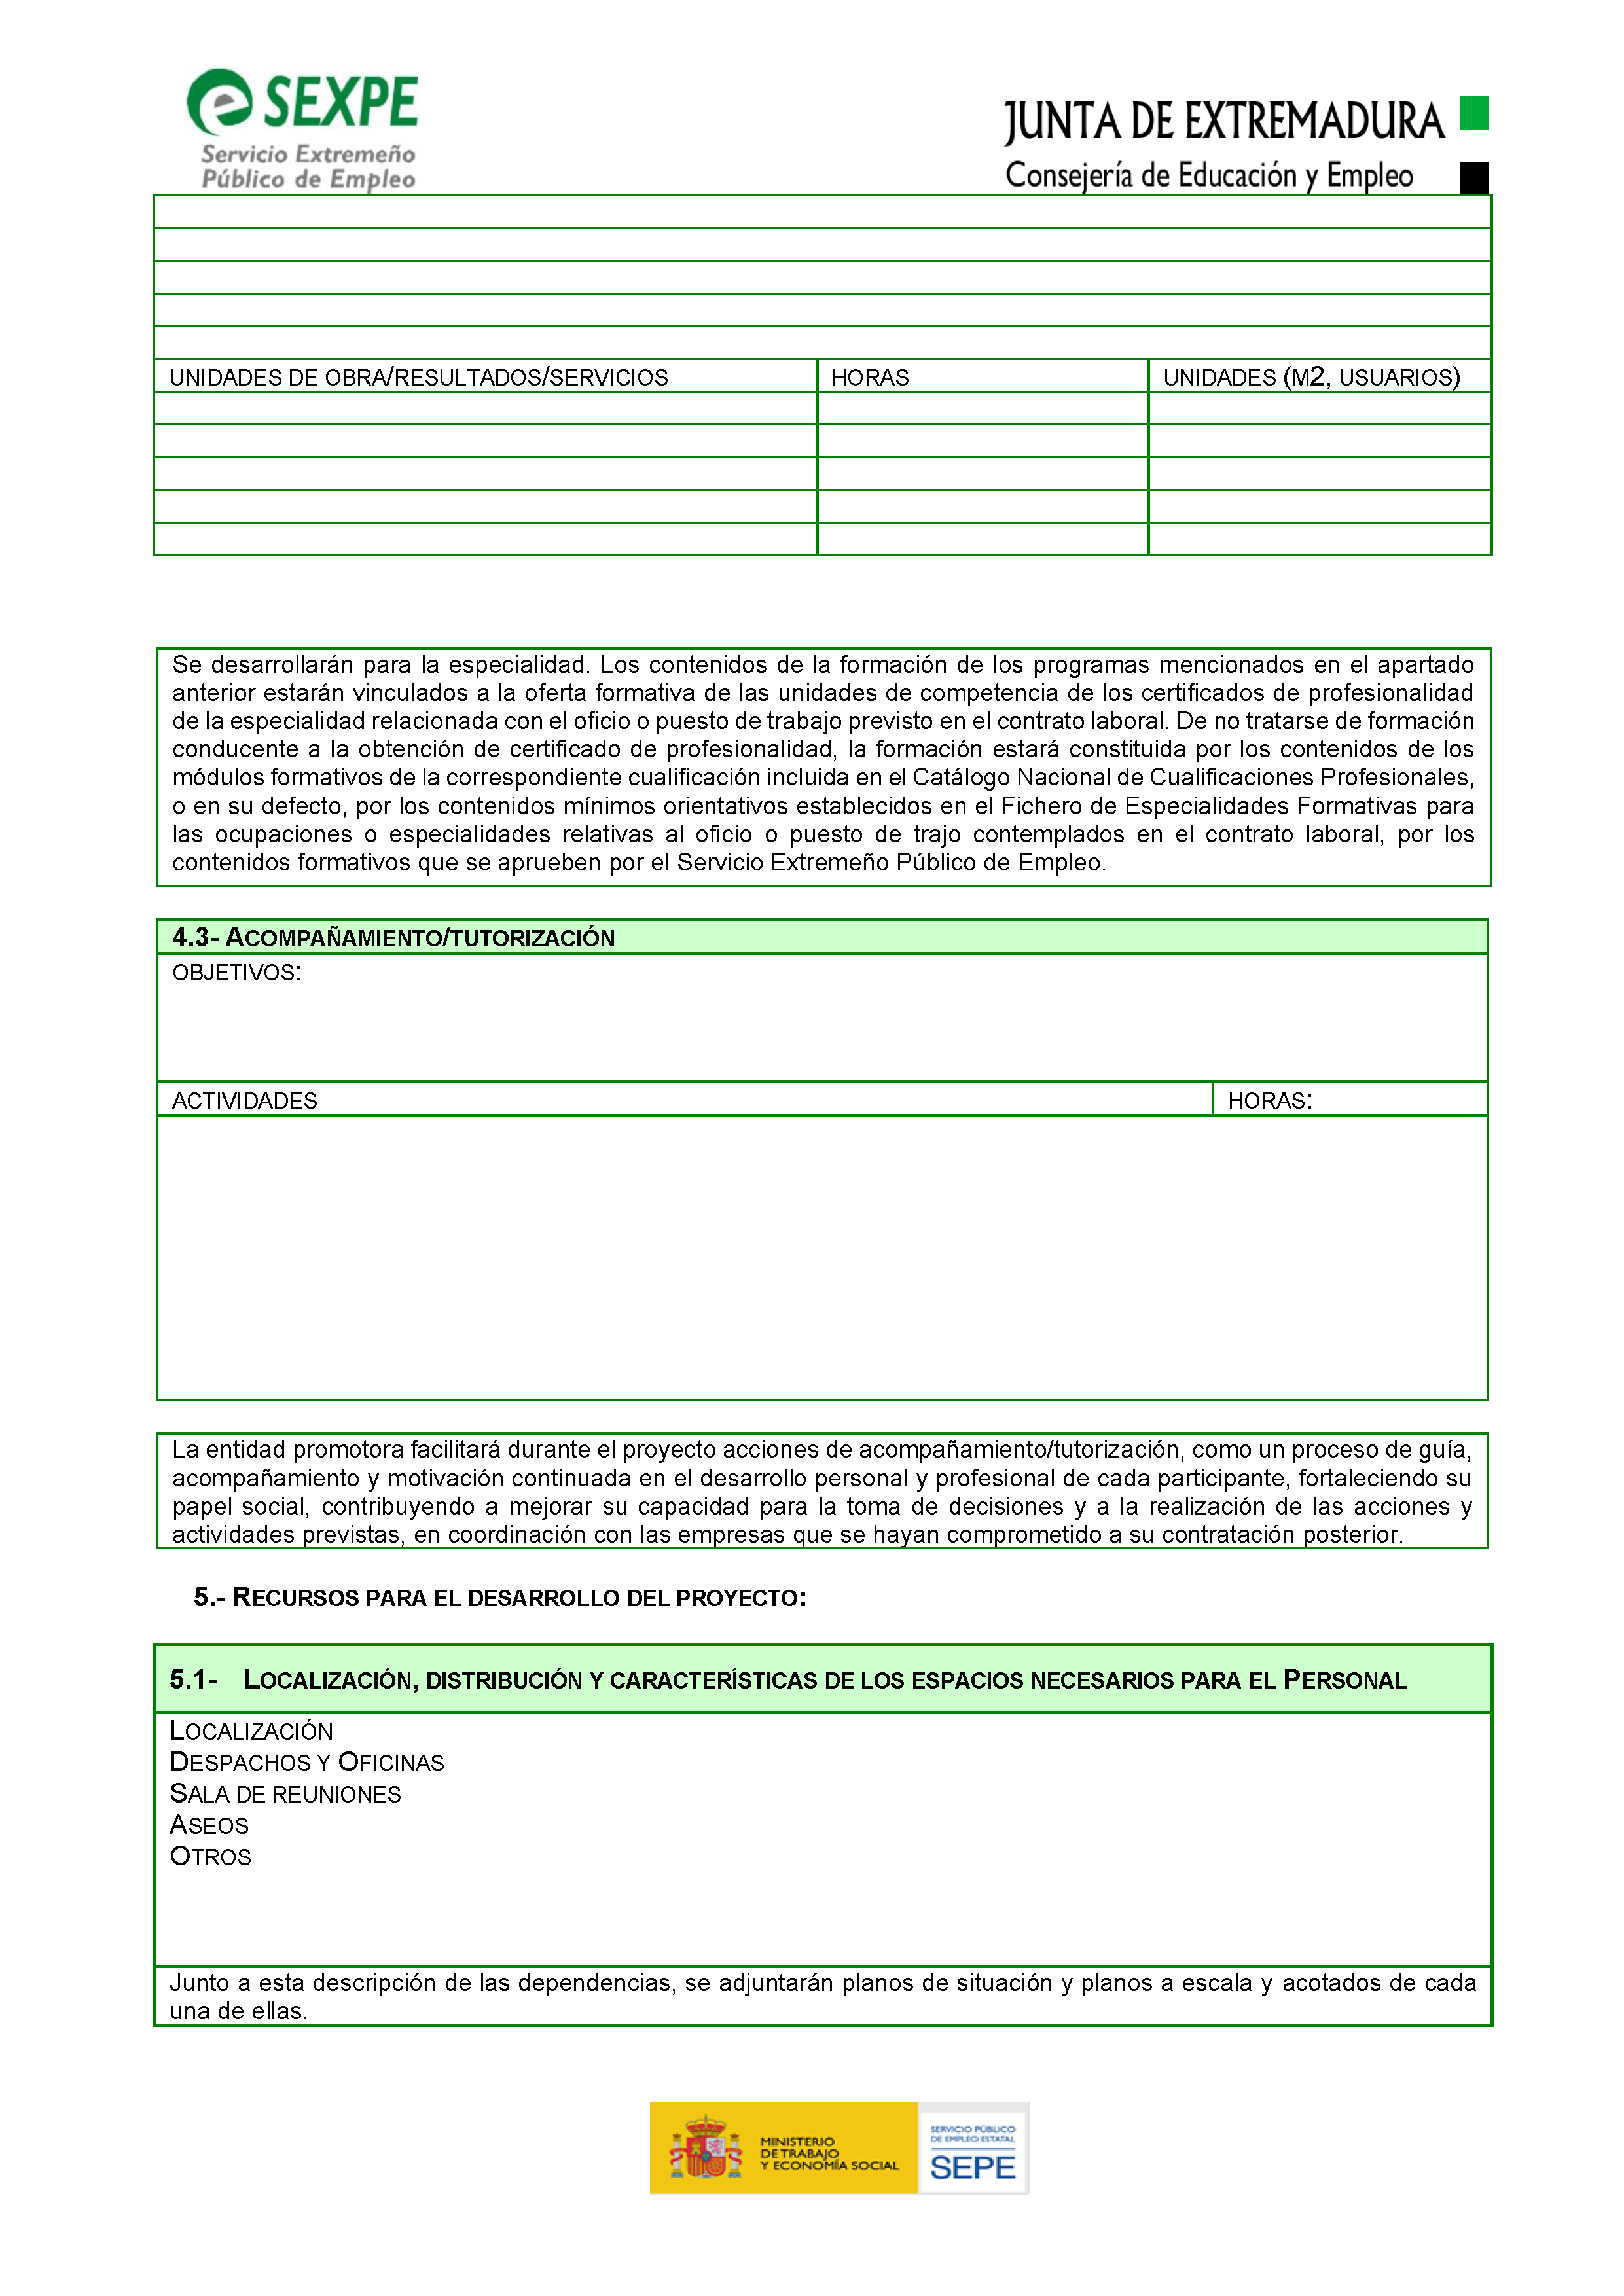 ANEXO I. SOLICITUD APROBACION DE PROYECTOS / SUBVENCIONES Pag 8